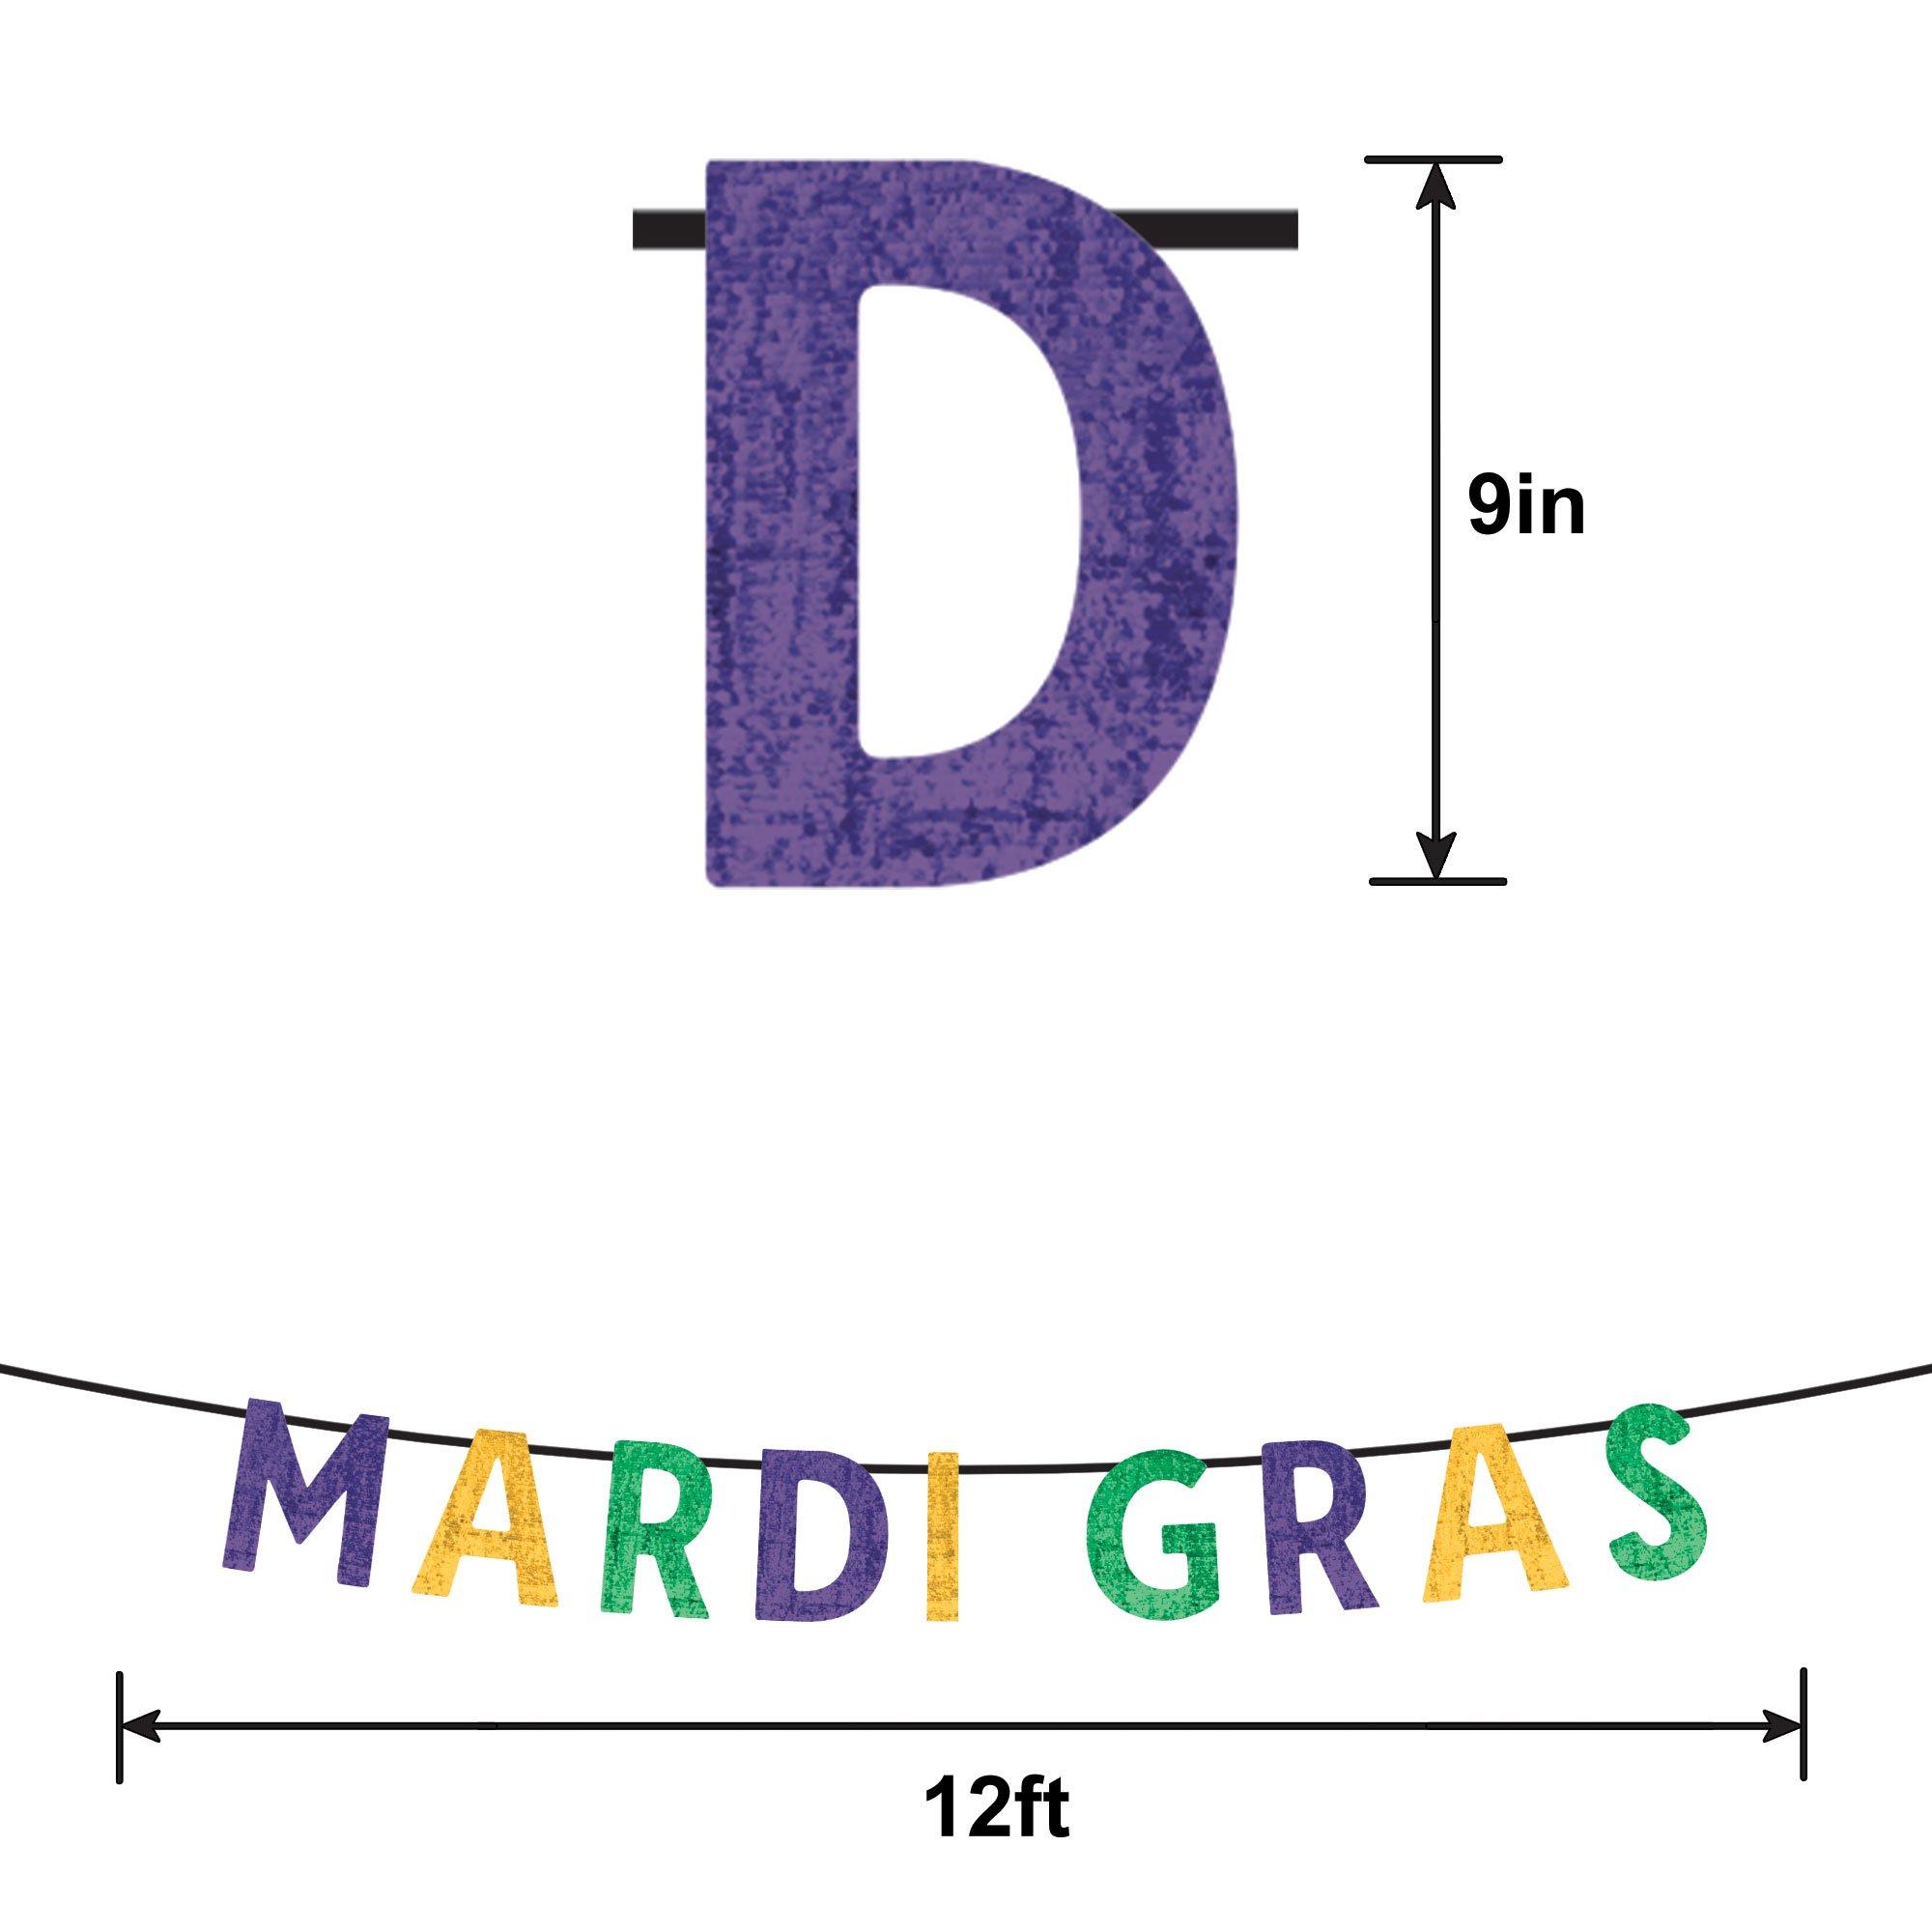 Mardi Gras Sequin Letter Banner, 12ft